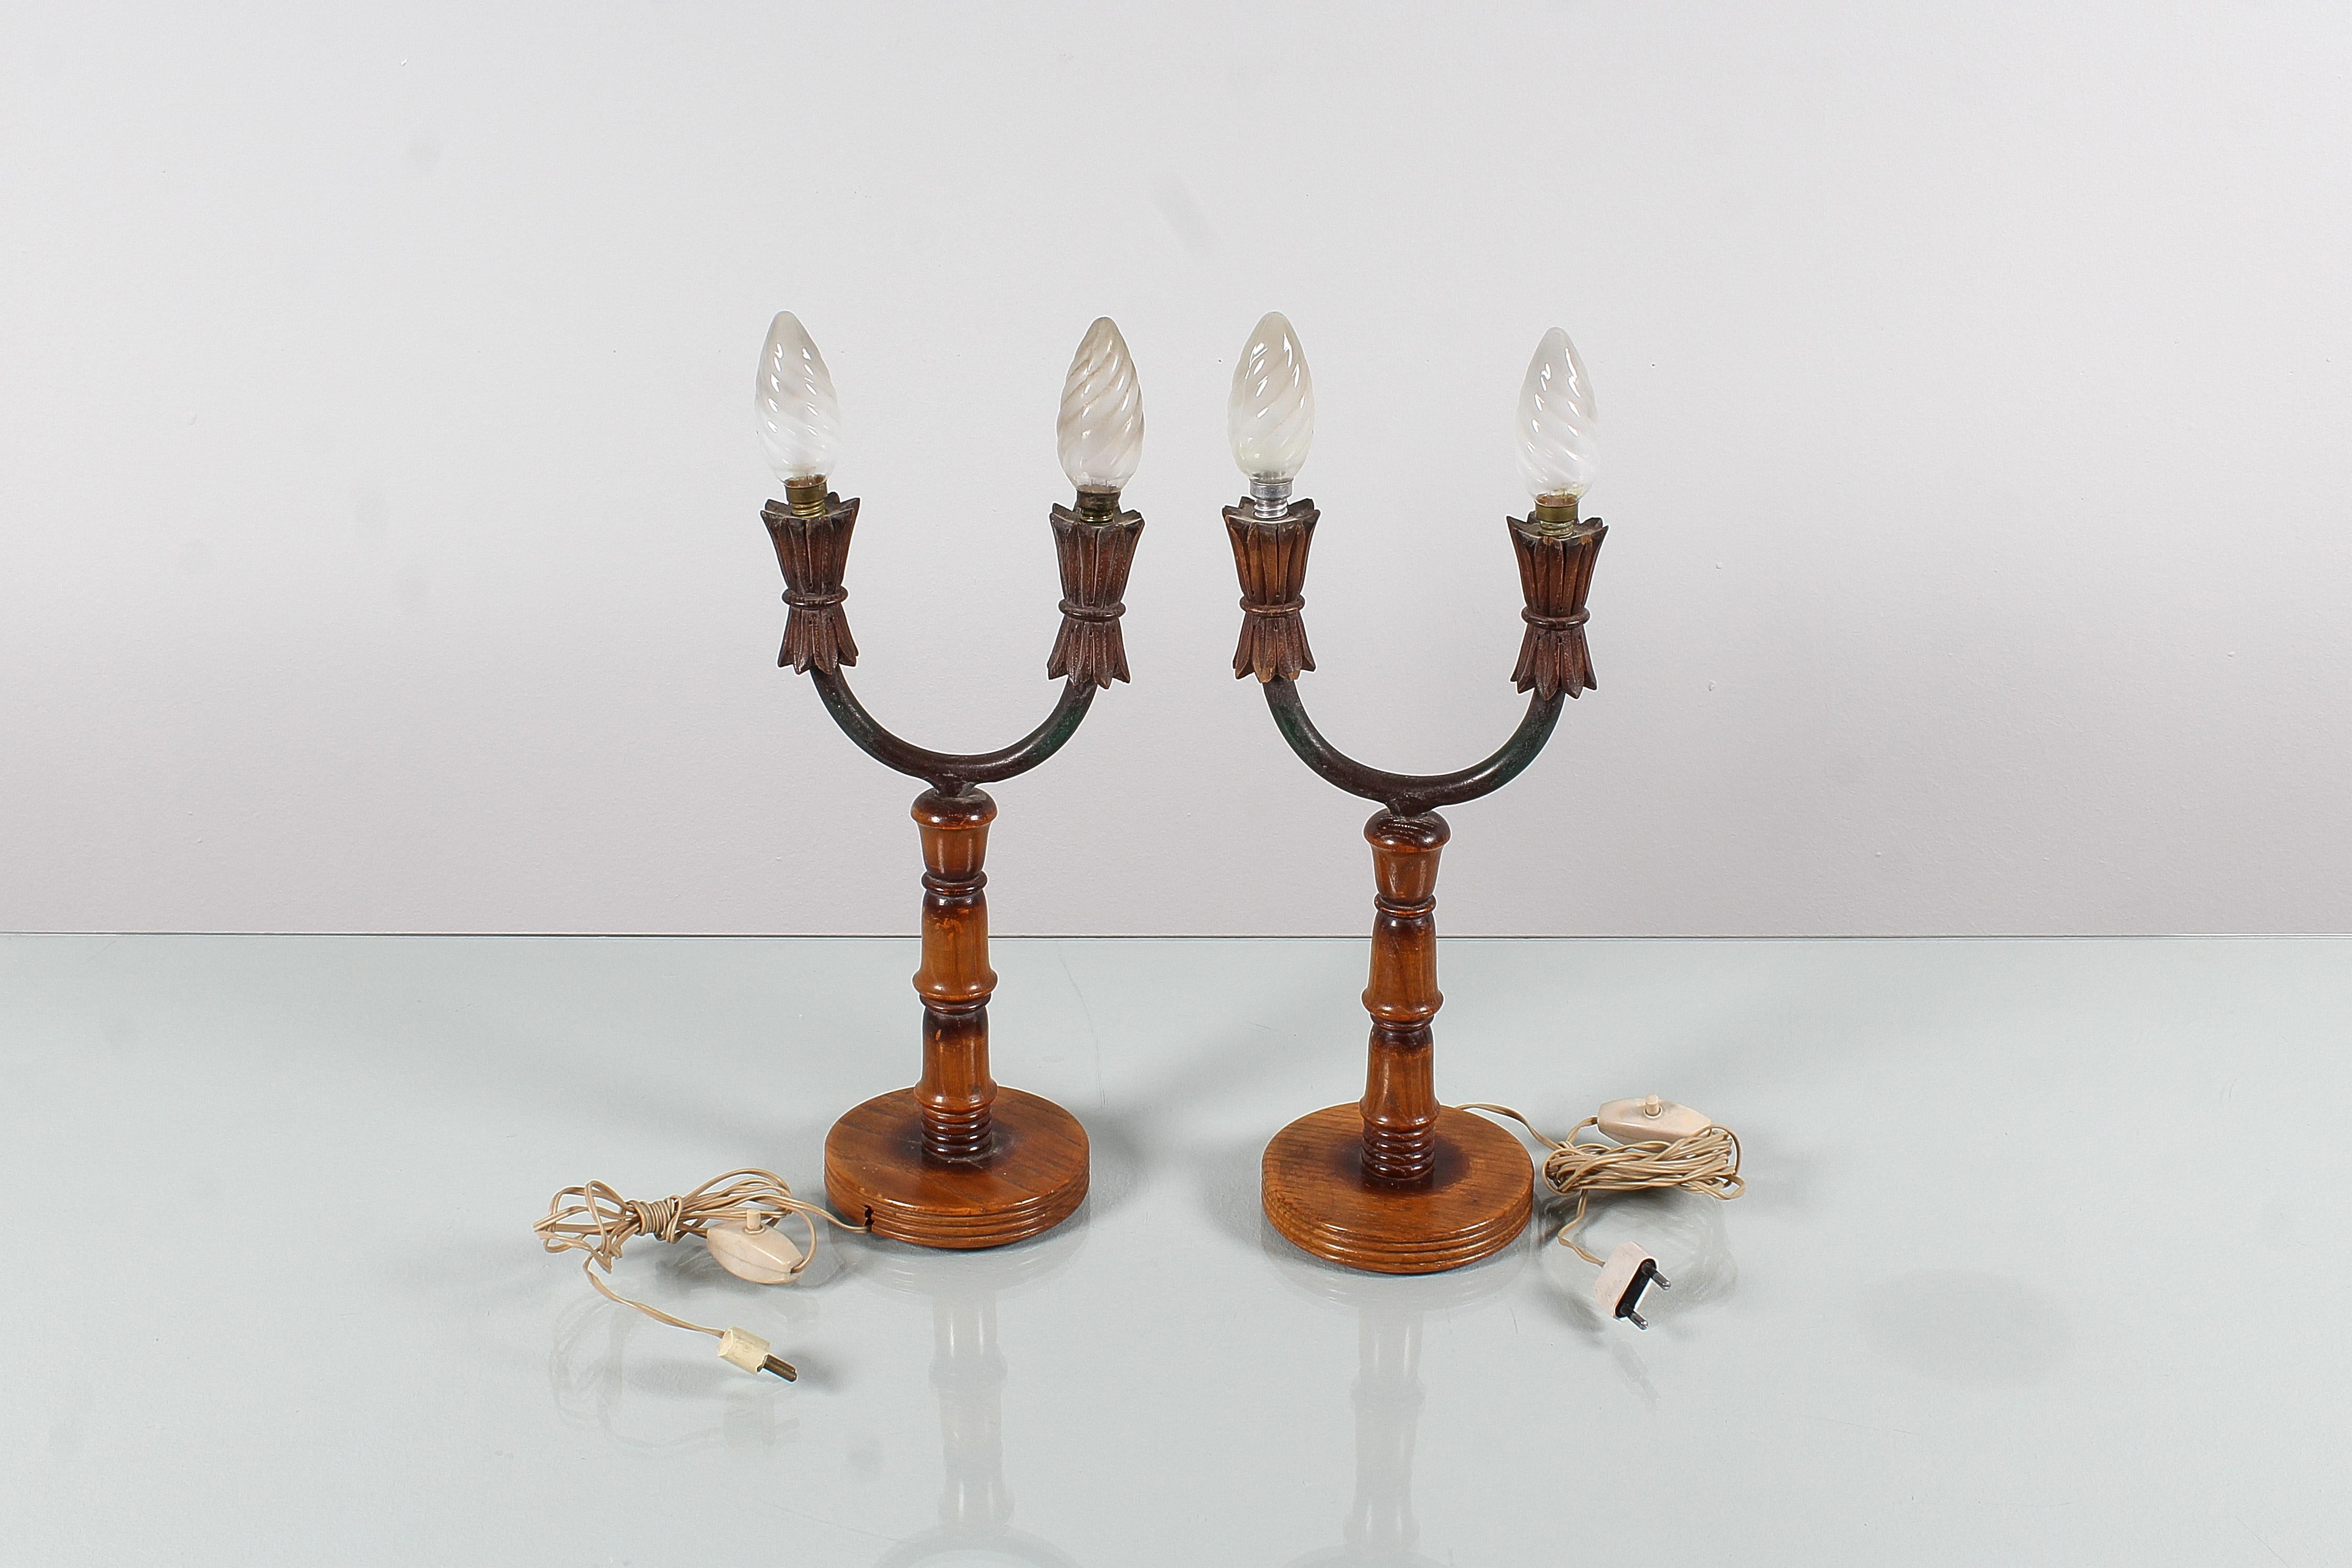 Raffiniertes Set von 2 Tischlampen, abat jour in Form eines doppelten Kerzenleuchters, mit einem hellen und dunklen gedrechselten Holzkörper und einem halbkreisförmigen Metallträger, von Colli Torino, italienische Produktion aus den 50er